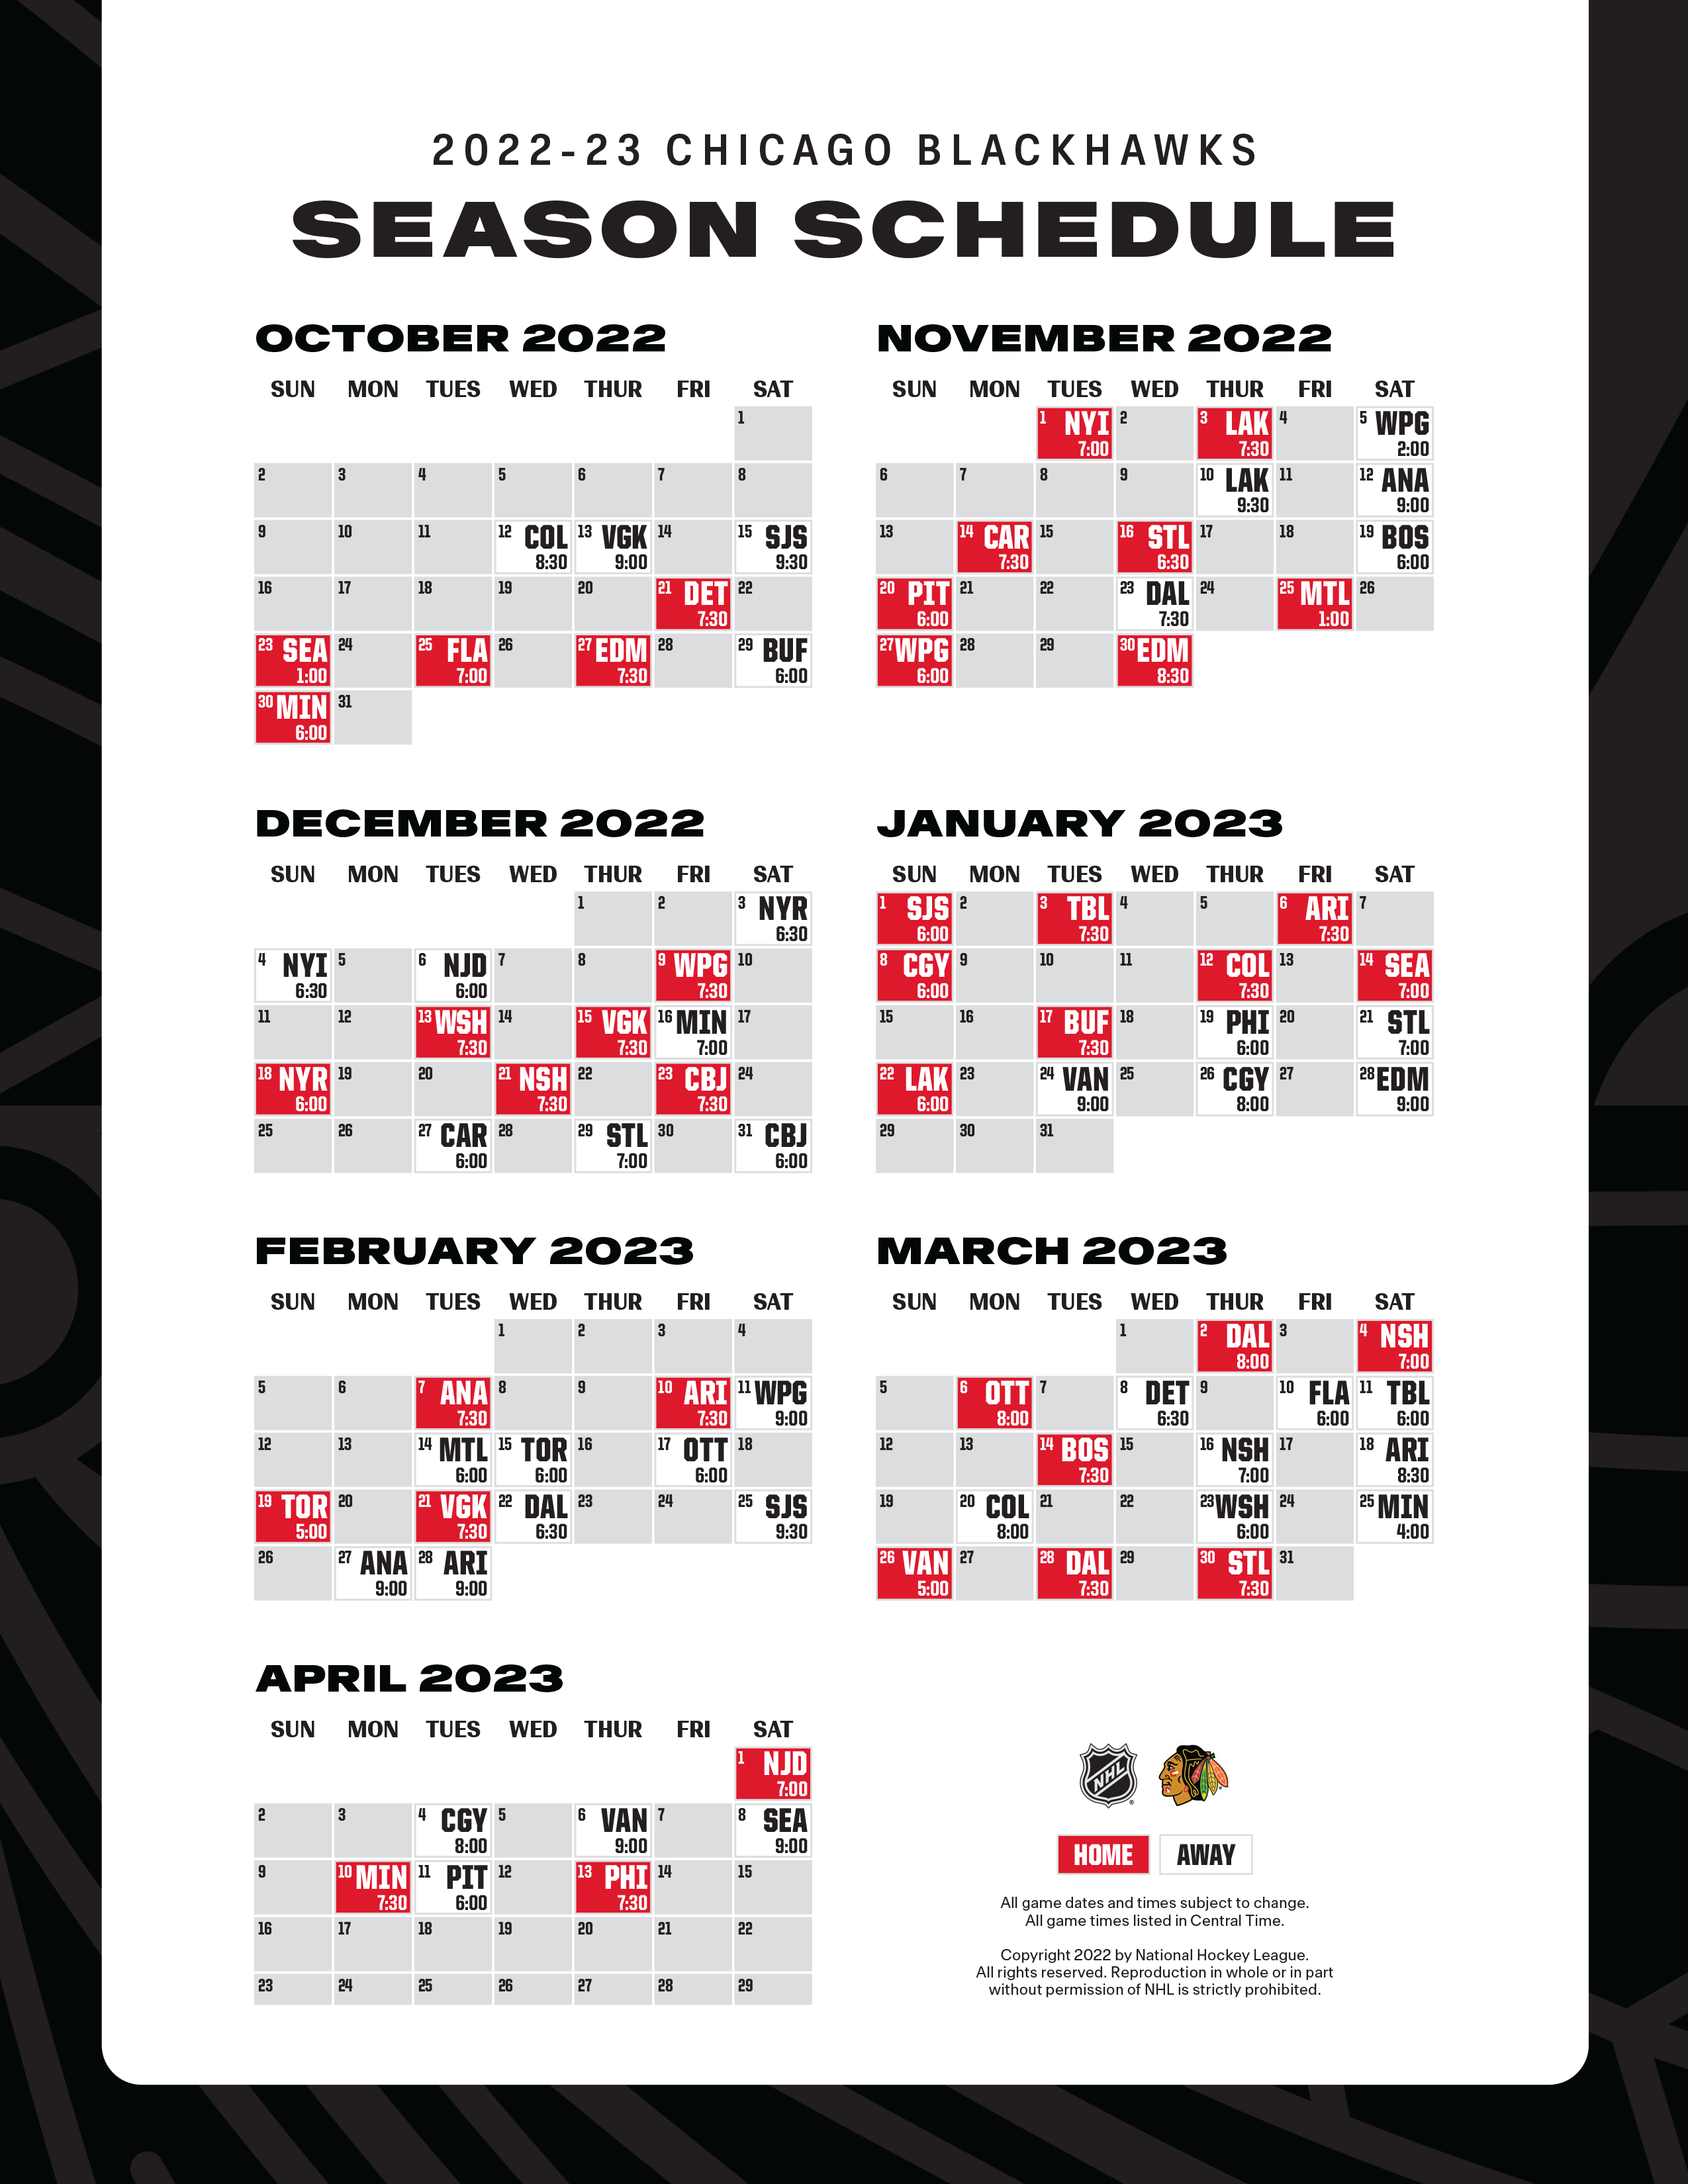 RELEASE Blackhawks Announce 2022 23 Season Schedule